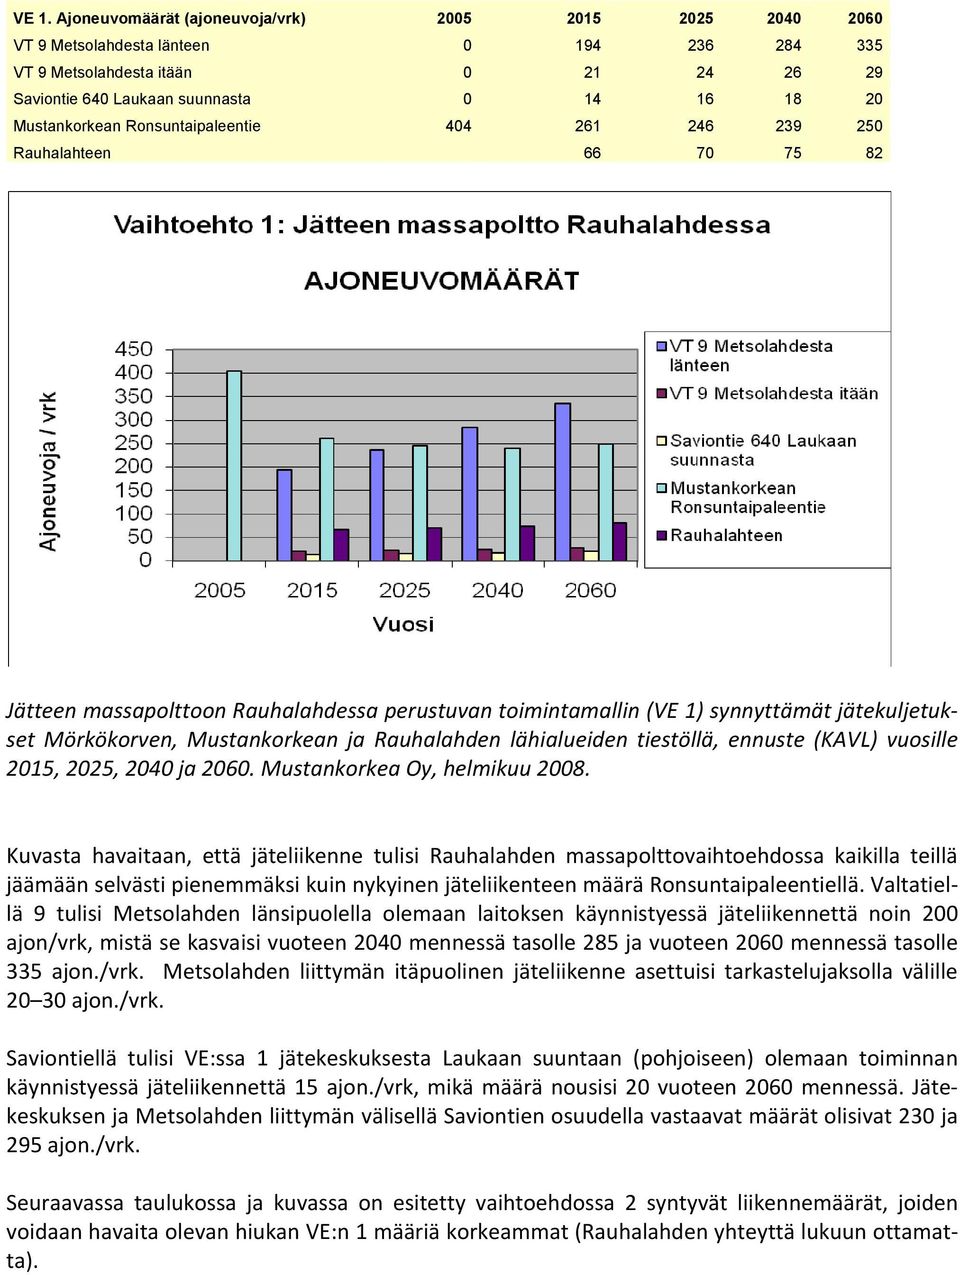 Mustankorkean ja Rauhalahden lähialueiden tiestöllä, ennuste (KAVL) vuosille 2015, 2025, 2040 ja 2060. Mustankorkea Oy, helmikuu 2008.